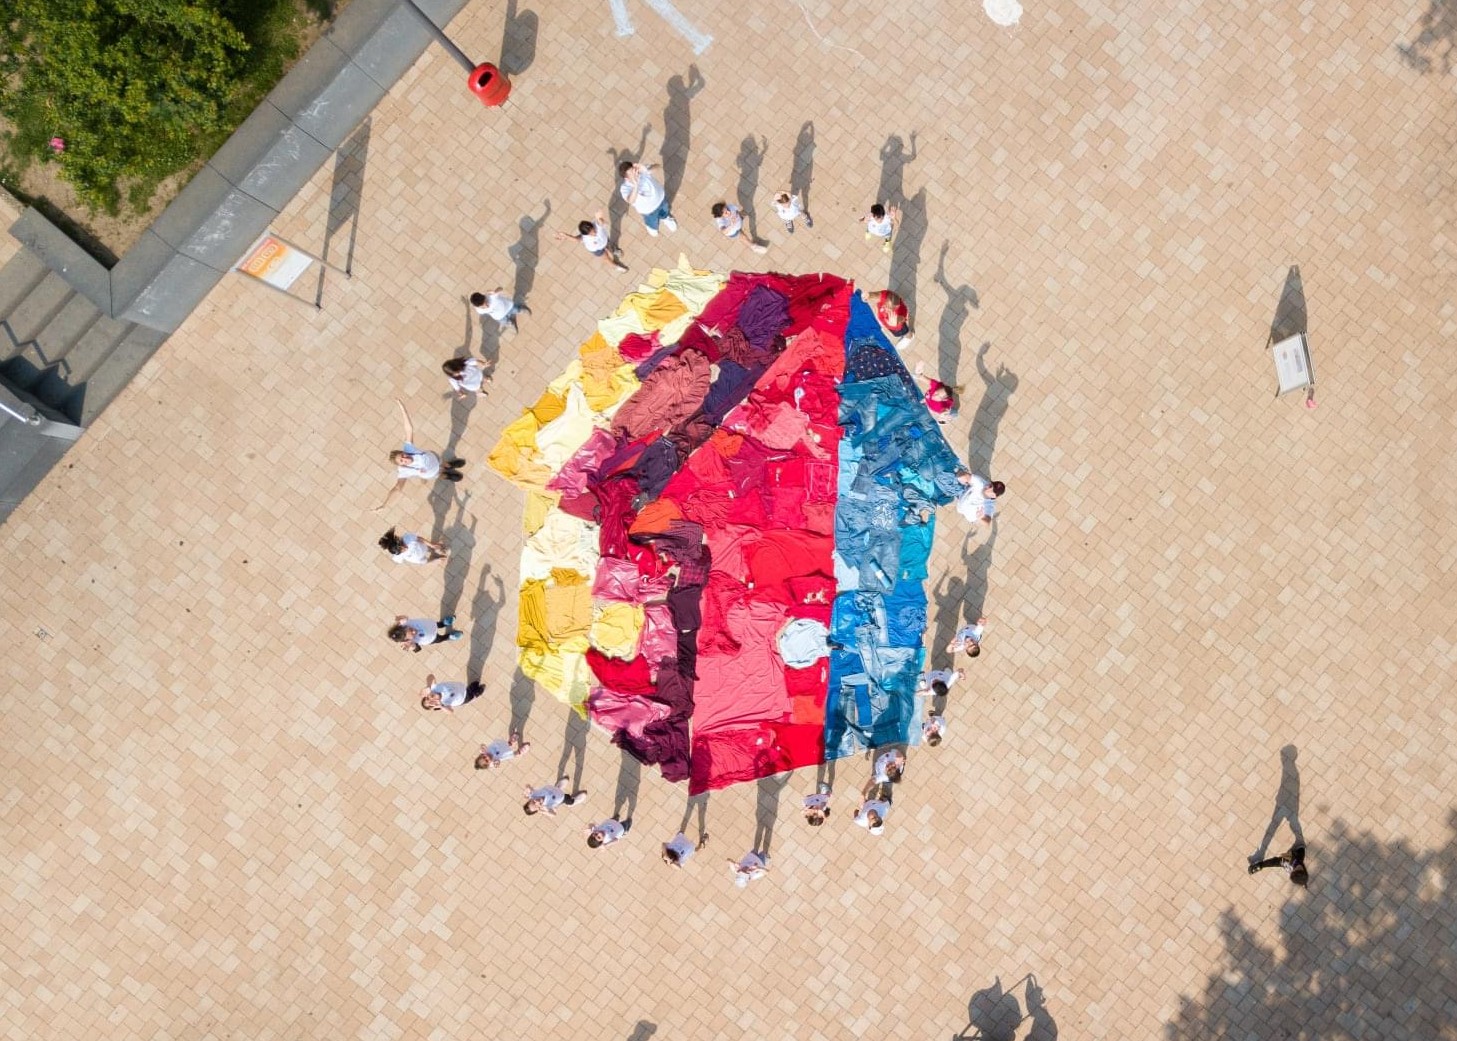 Aufnahme von oben: Viele Menschen in weißen T-Shirts stehen um ein aus gefärbtem Stoff auf den Boden gelegtes Mehrgenerationenhaus-Logo